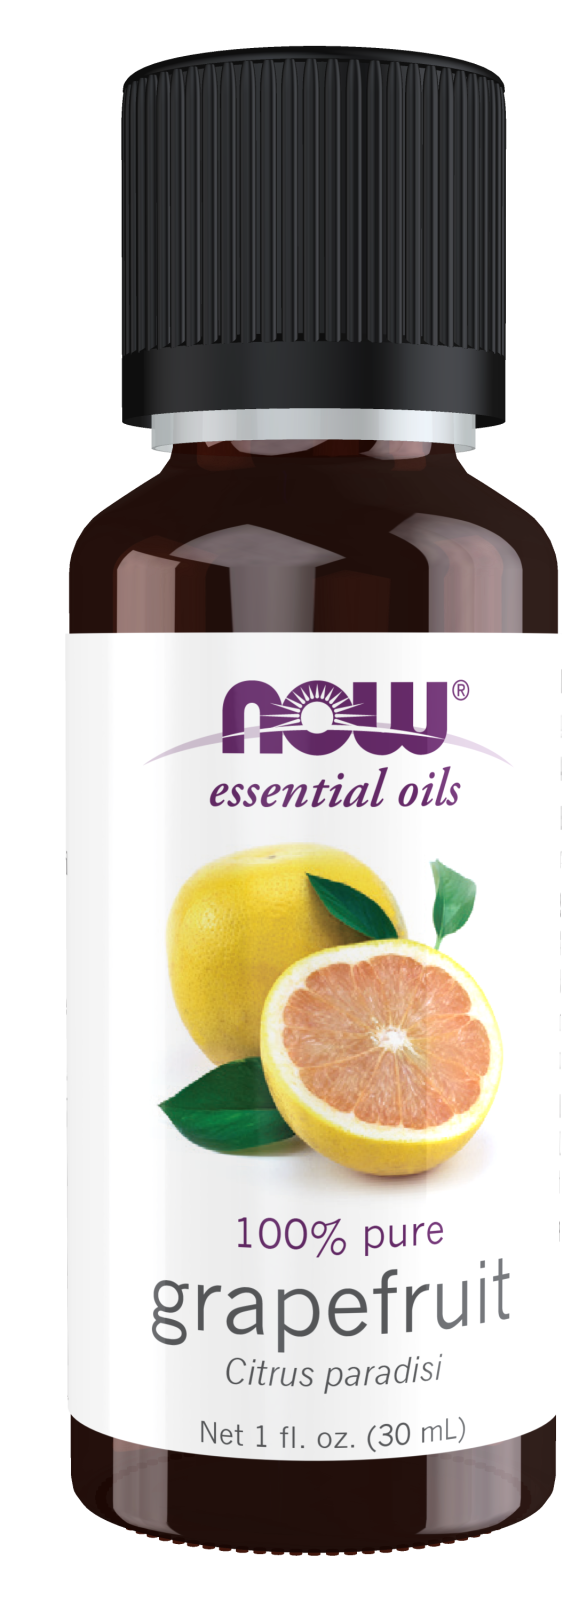 Organic White Grapefruit Essential Oil - Get Natural Essential Oils